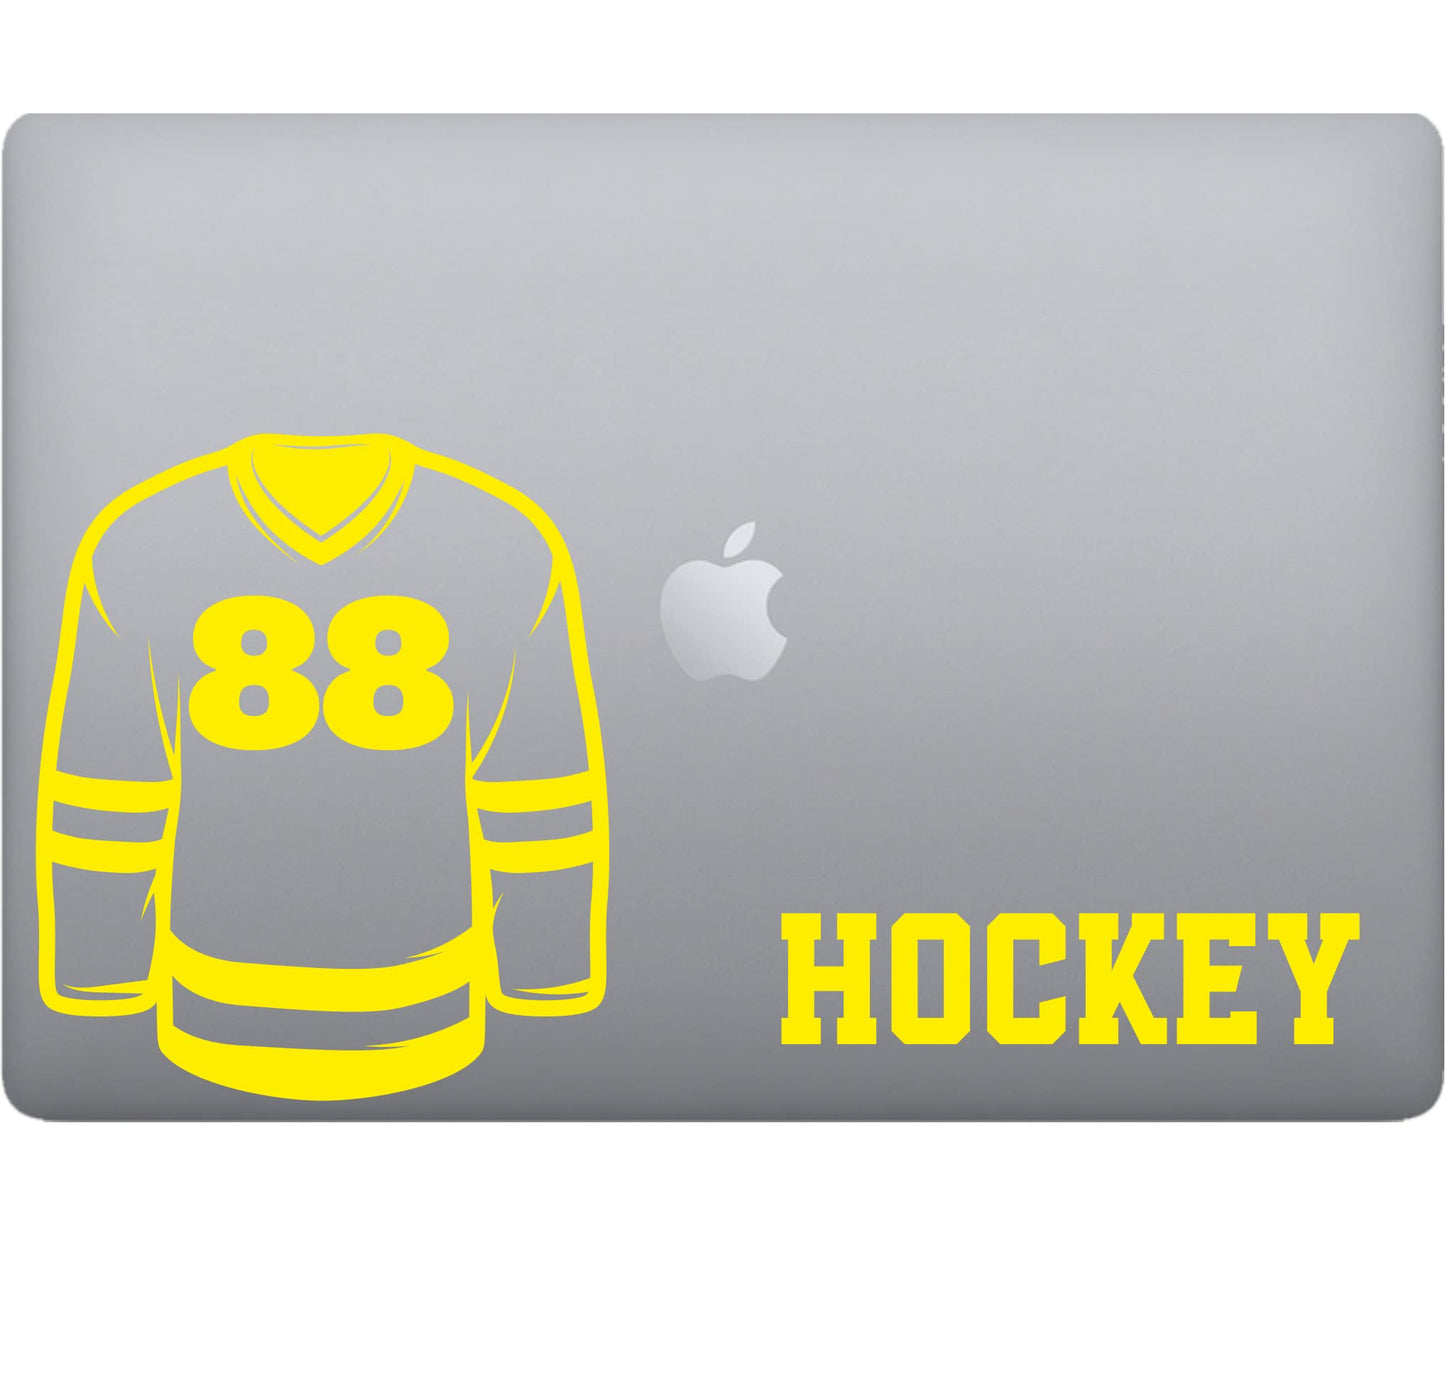 Adesivo HOCKEY sport stickers per pc vinile tablet computer decalcomania arte mela -Vinile colore a scelta COD.P0067 a €9.99 solo da DualColorStampe